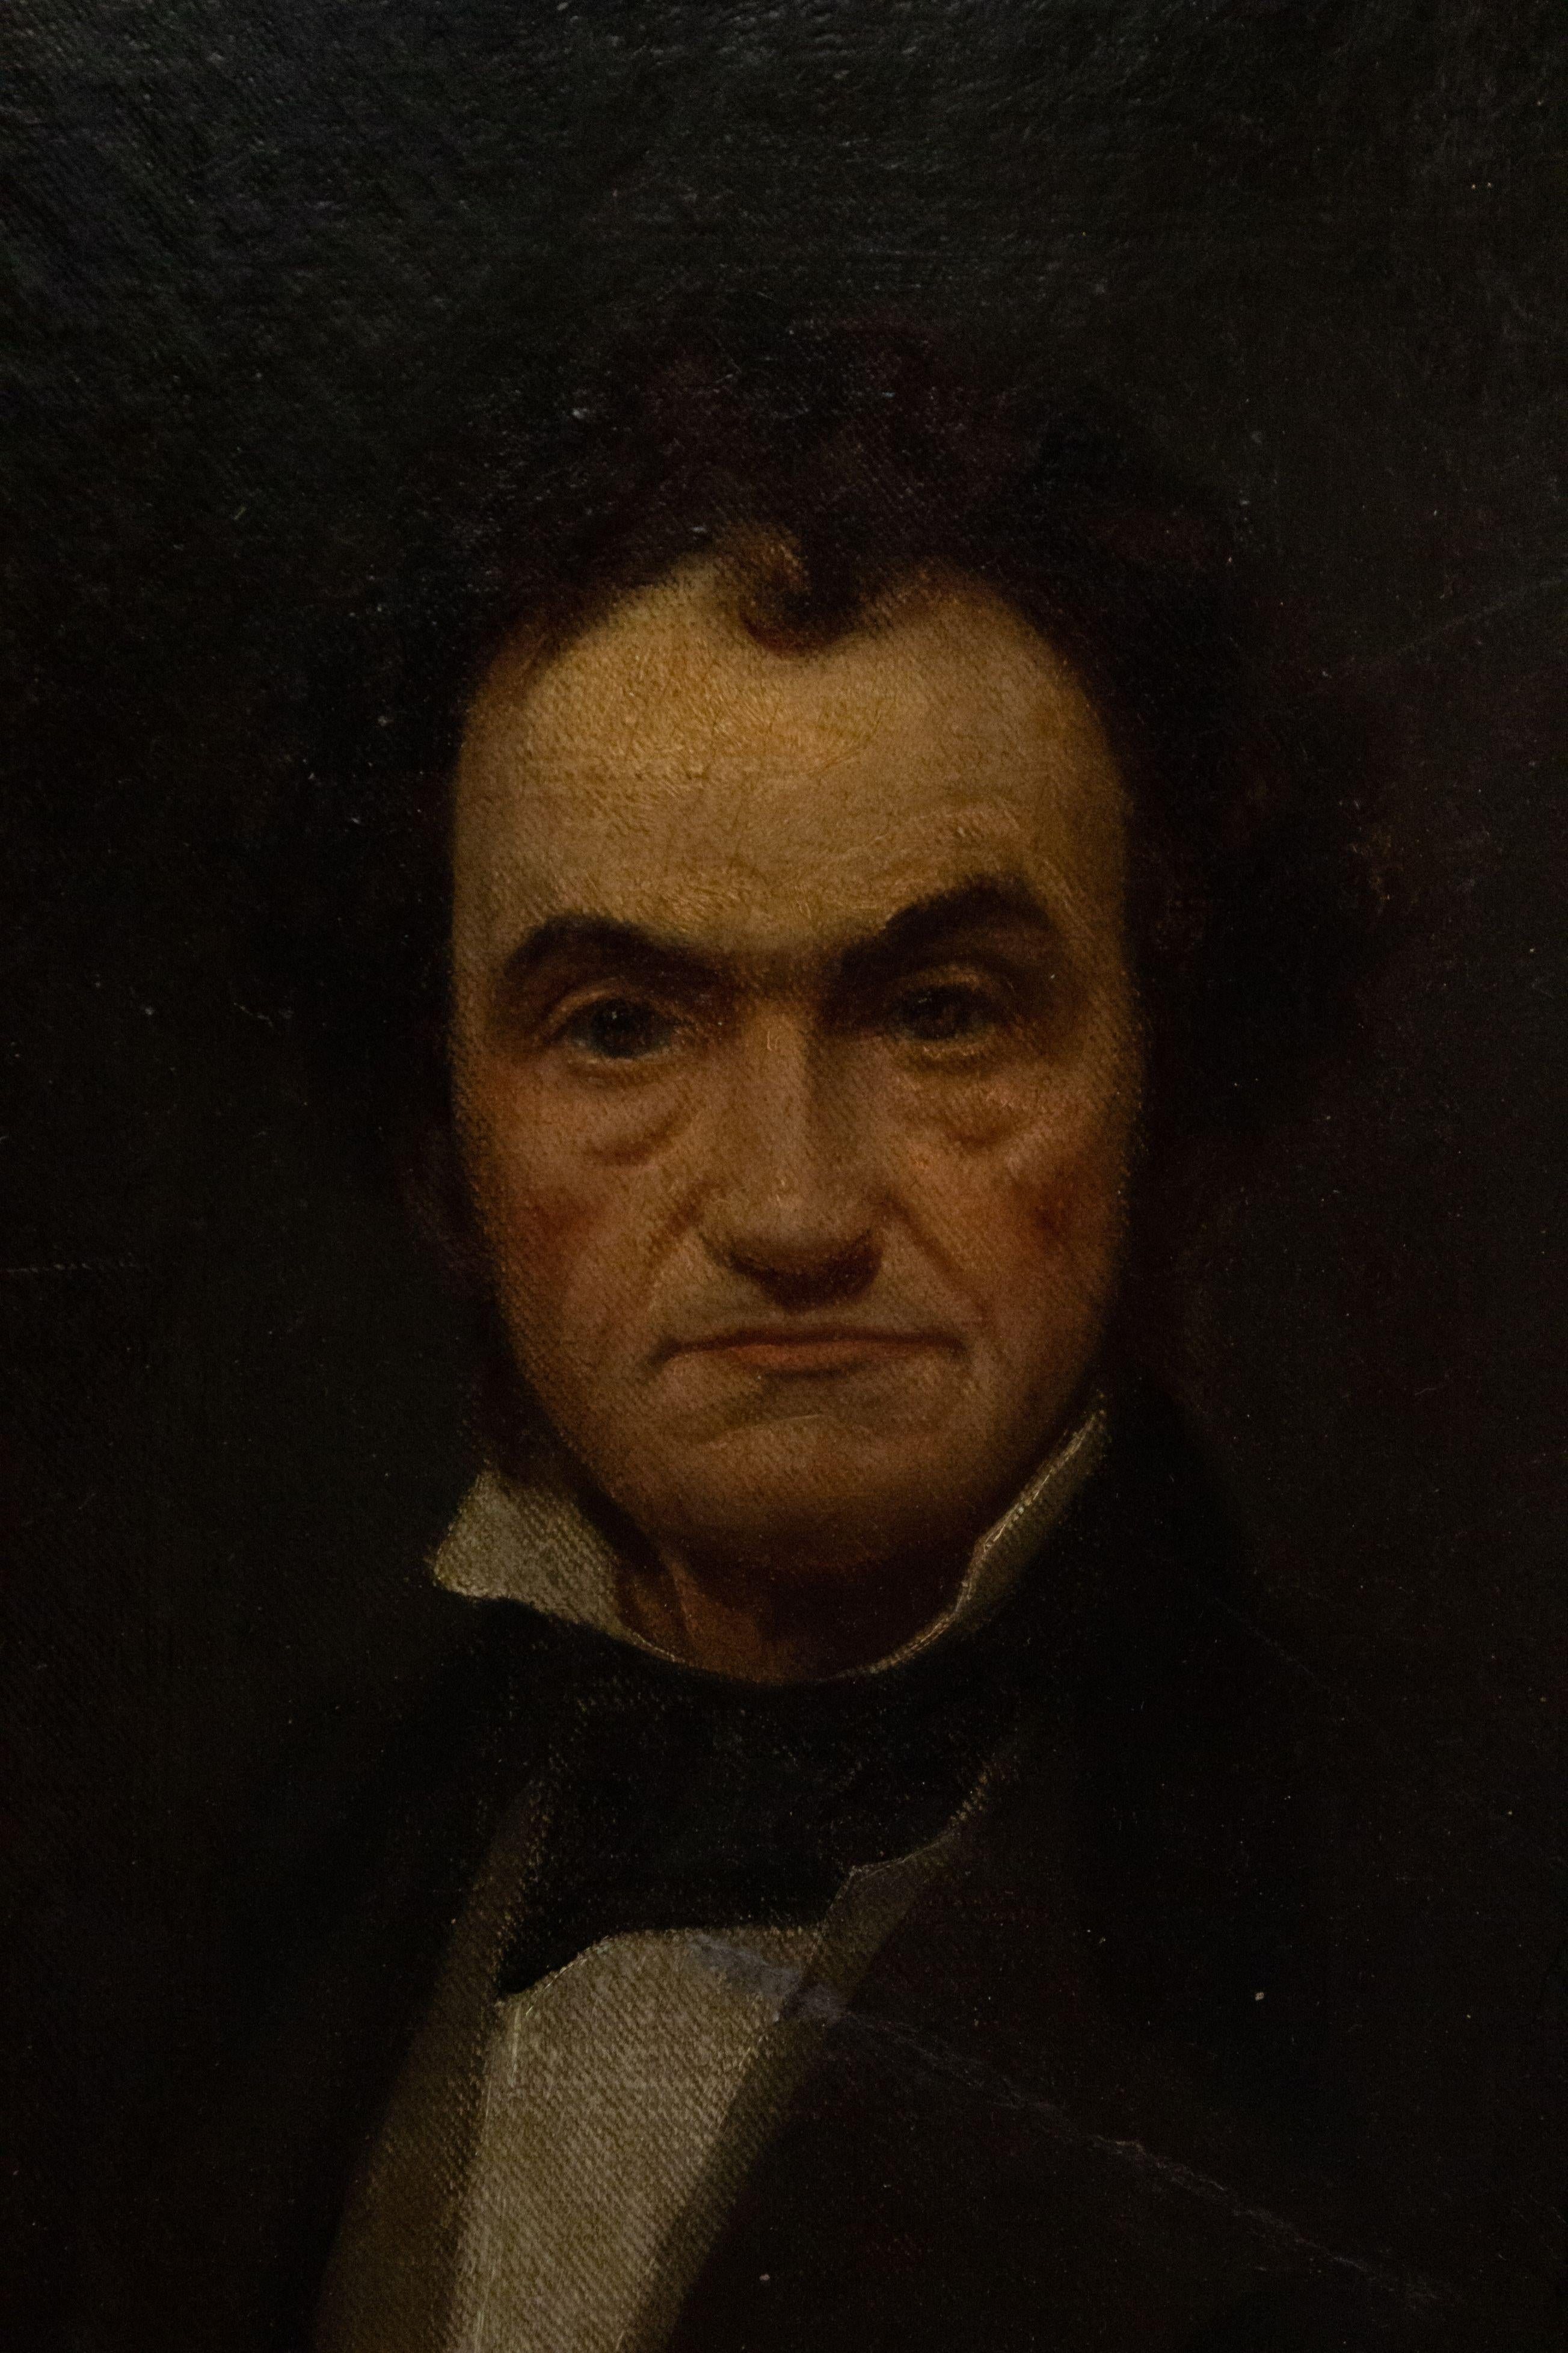 Portrait à l'huile encadré et doré de style géorgien anglais, peinture d'un homme du 19ème siècle assis sur un coussin rouge.